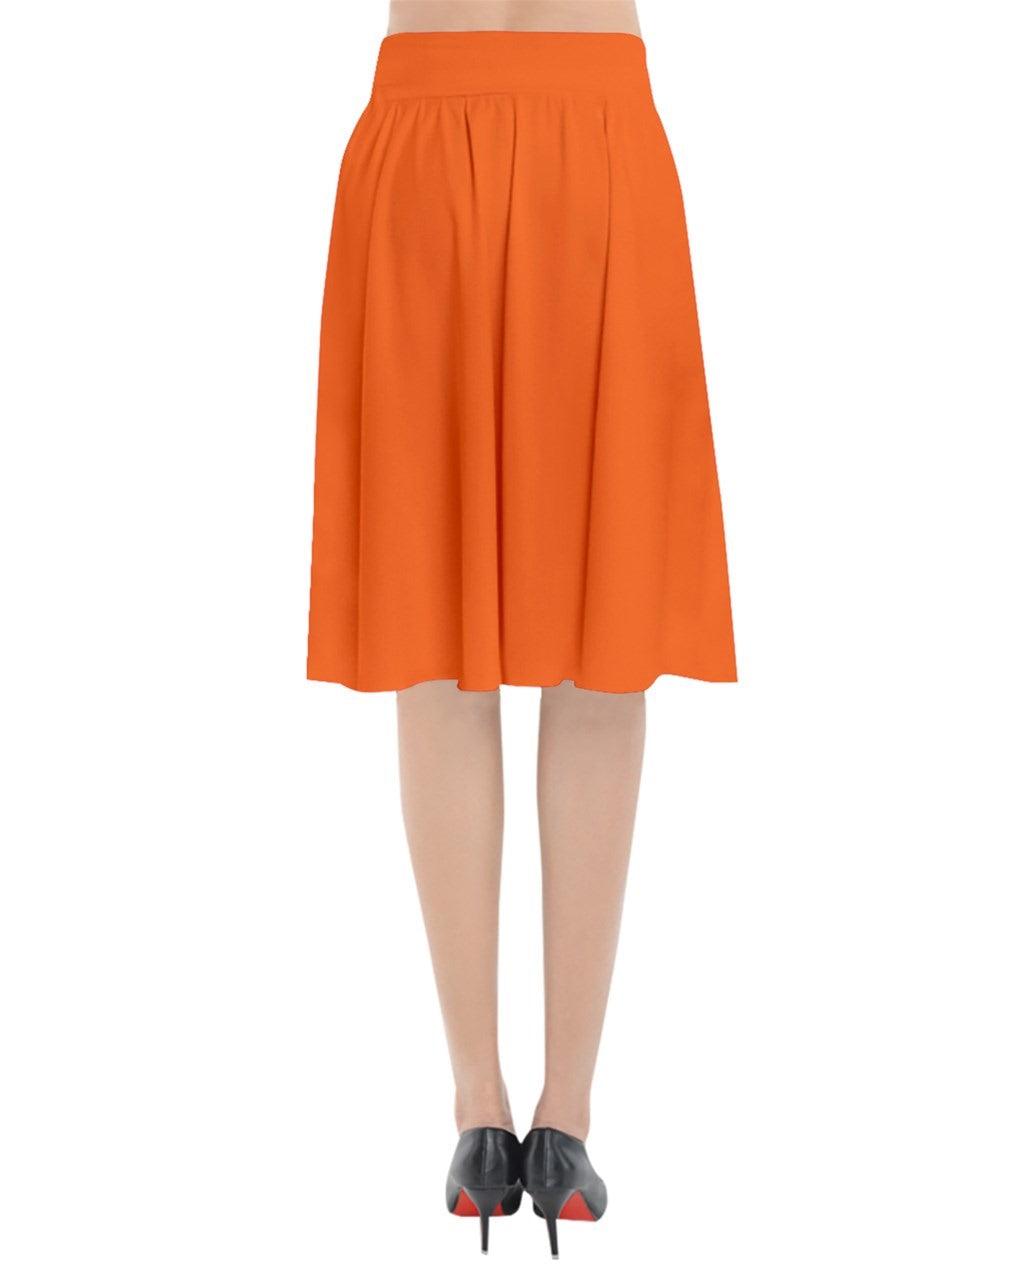 Mandra Orange Flared Midi Skirt - Blissfully Brand